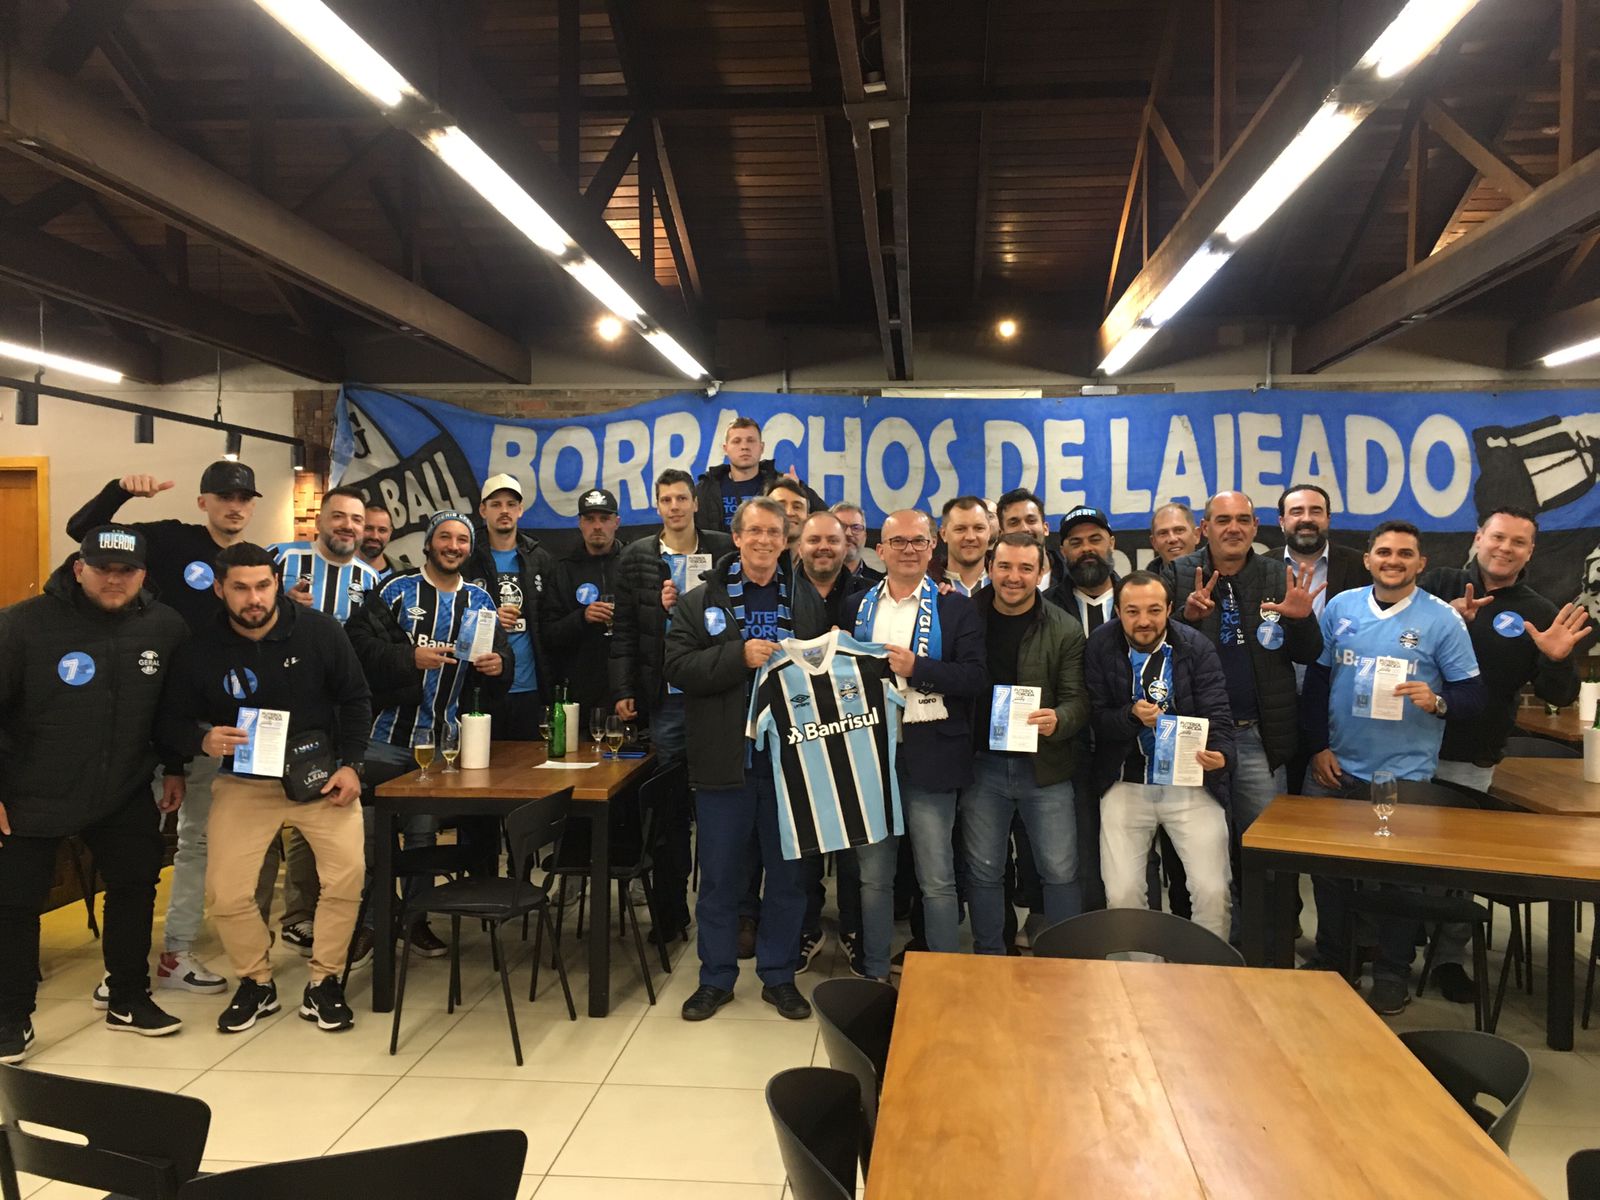 Candidato à presidência do Grêmio apresenta propostas em visita a Lajeado